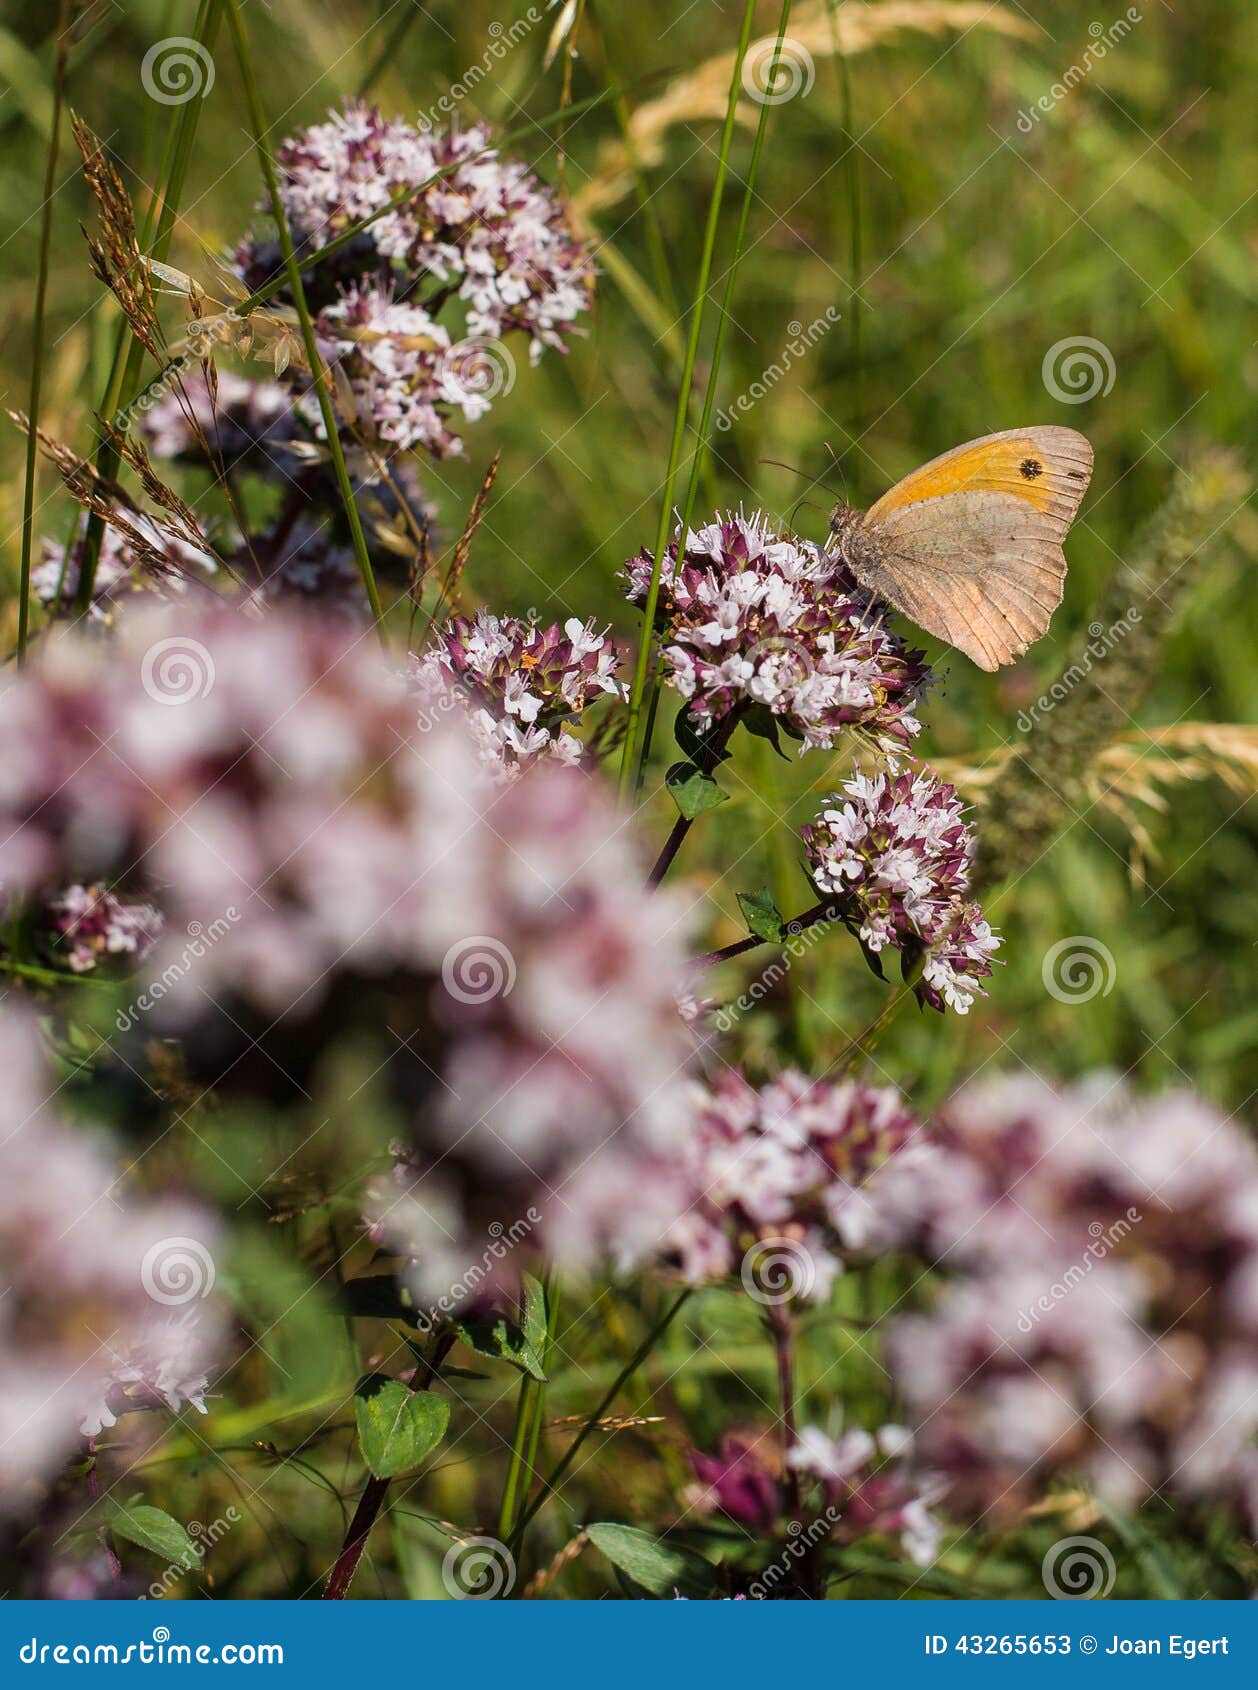 small heath feeding on nectar